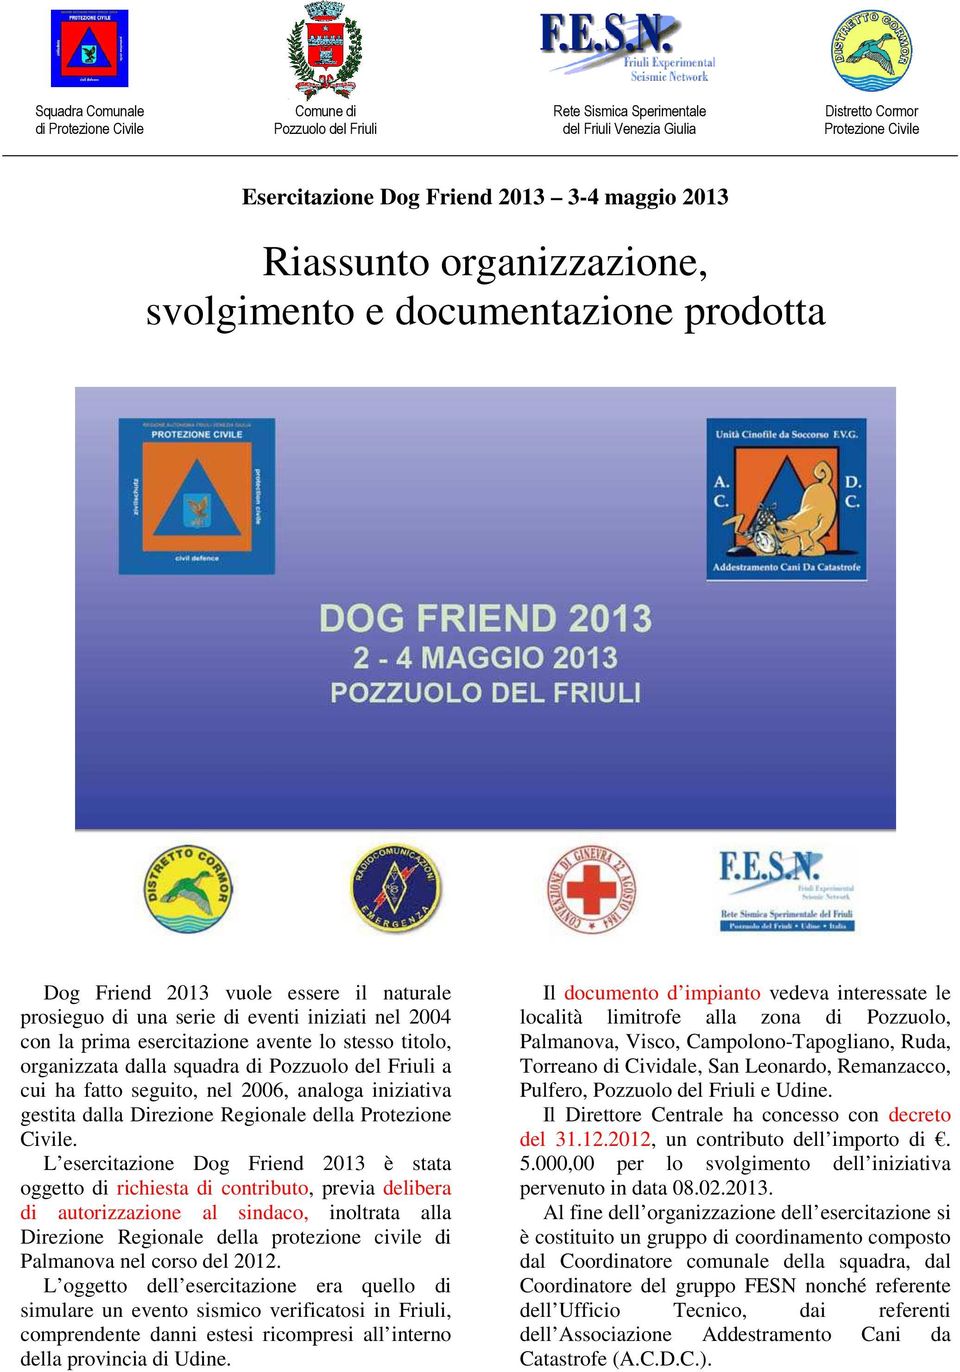 stesso titolo, organizzata dalla squadra di Pozzuolo del Friuli a cui ha fatto seguito, nel 2006, analoga iniziativa gestita dalla Direzione Regionale della Protezione Civile.